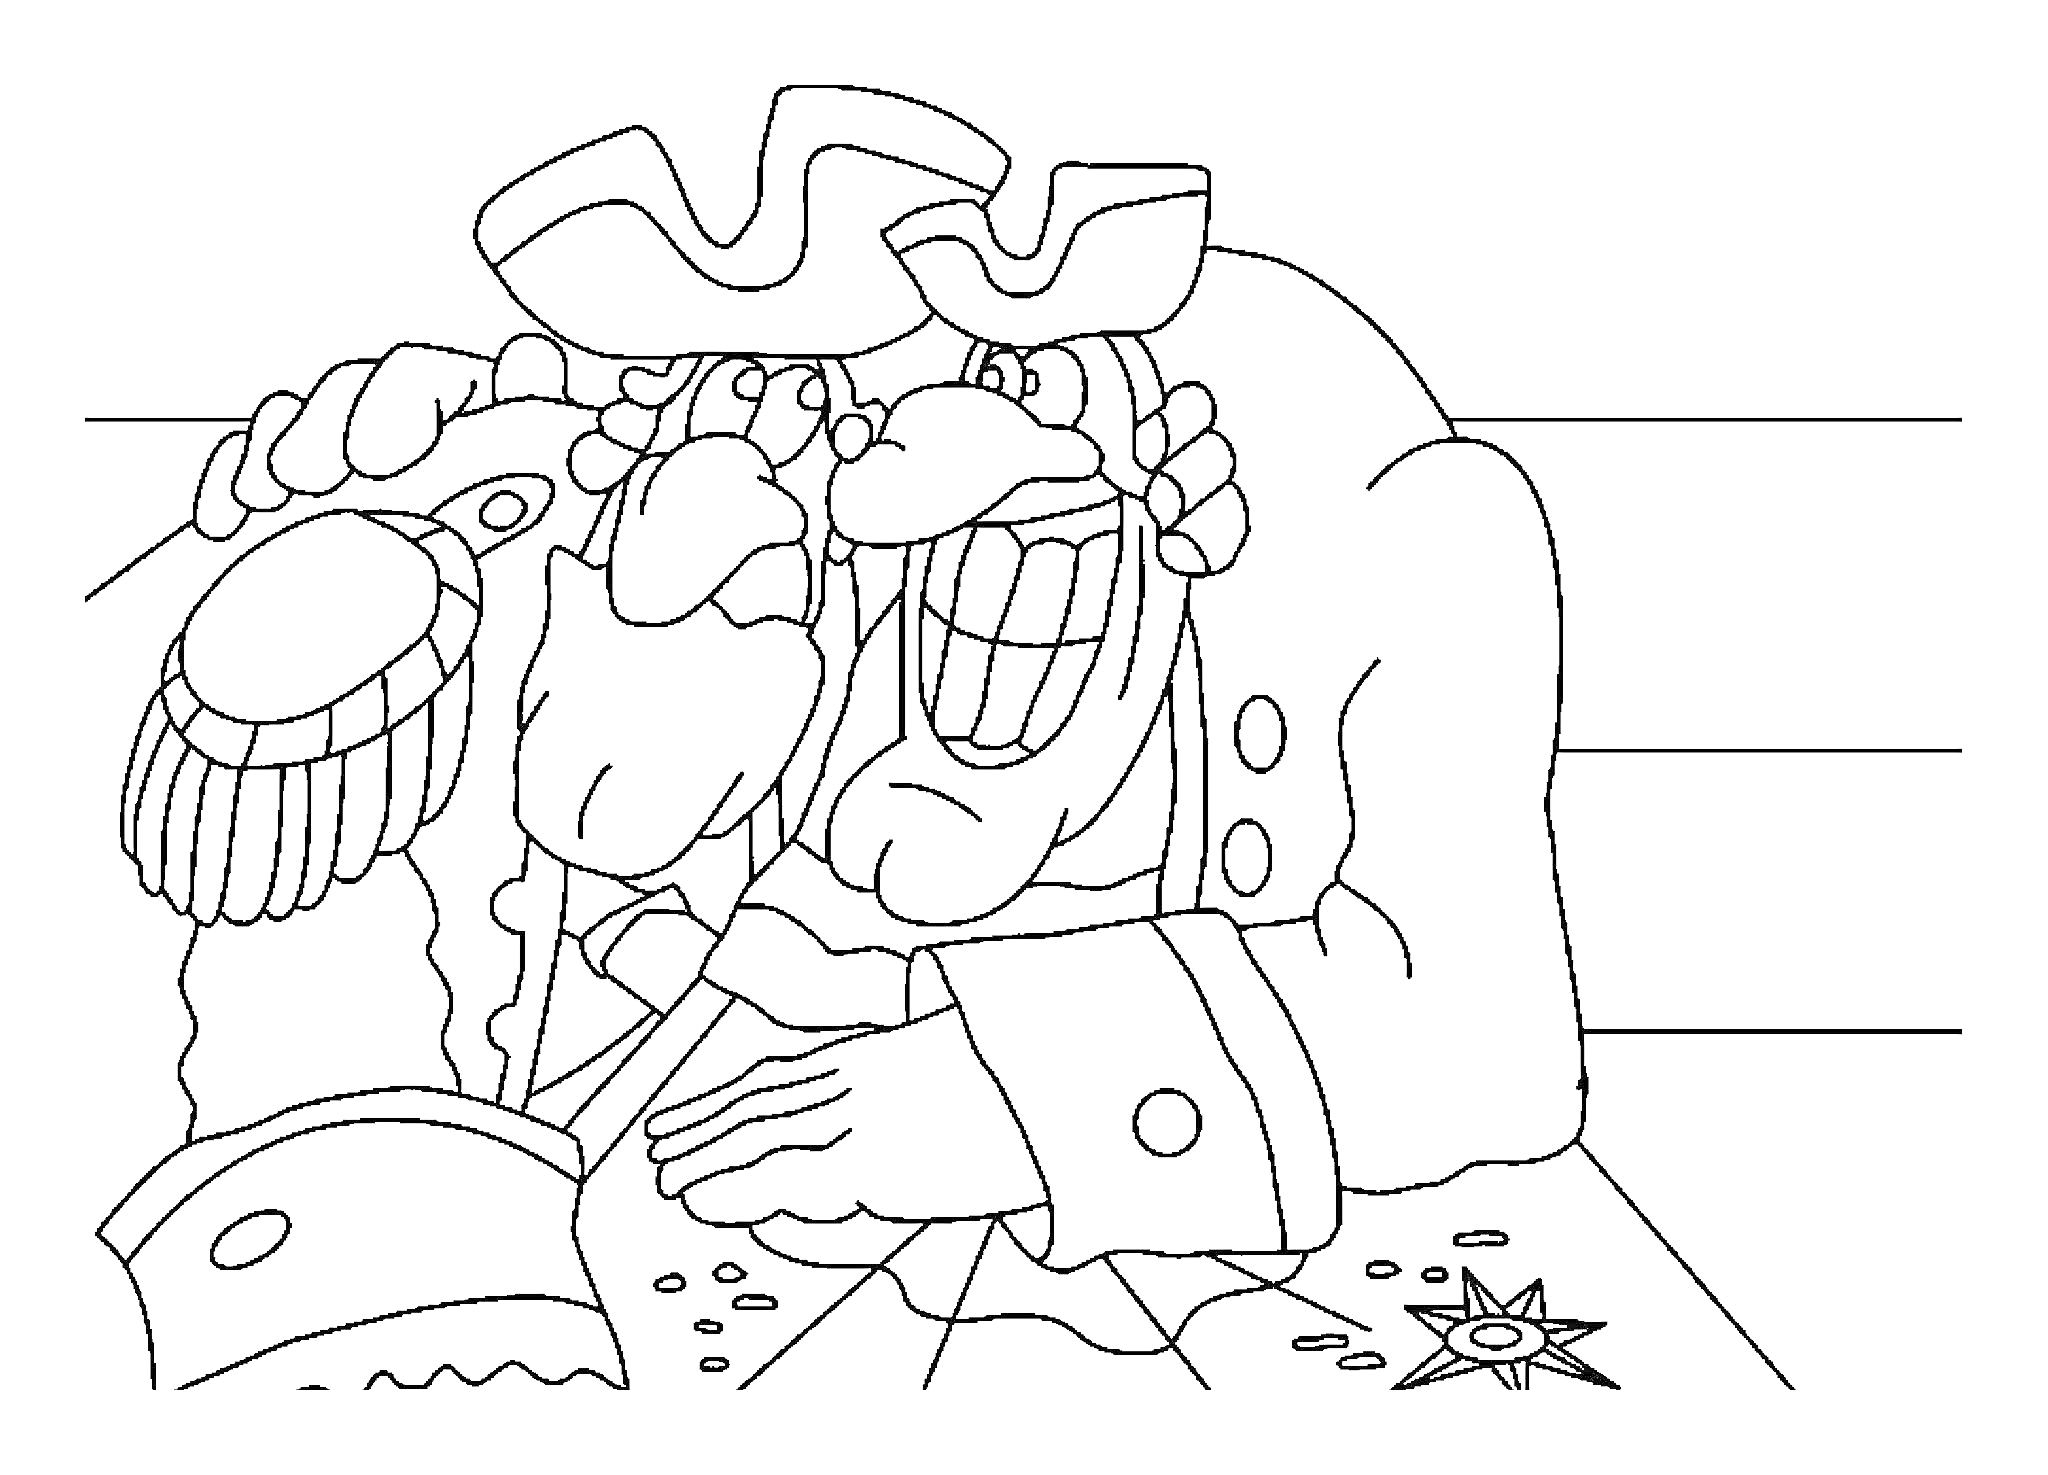 Раскраска Два доктора Ливси с ручкой на плече друг у друга, в треугольных шляпах и мундире, на столе монеты и звезда